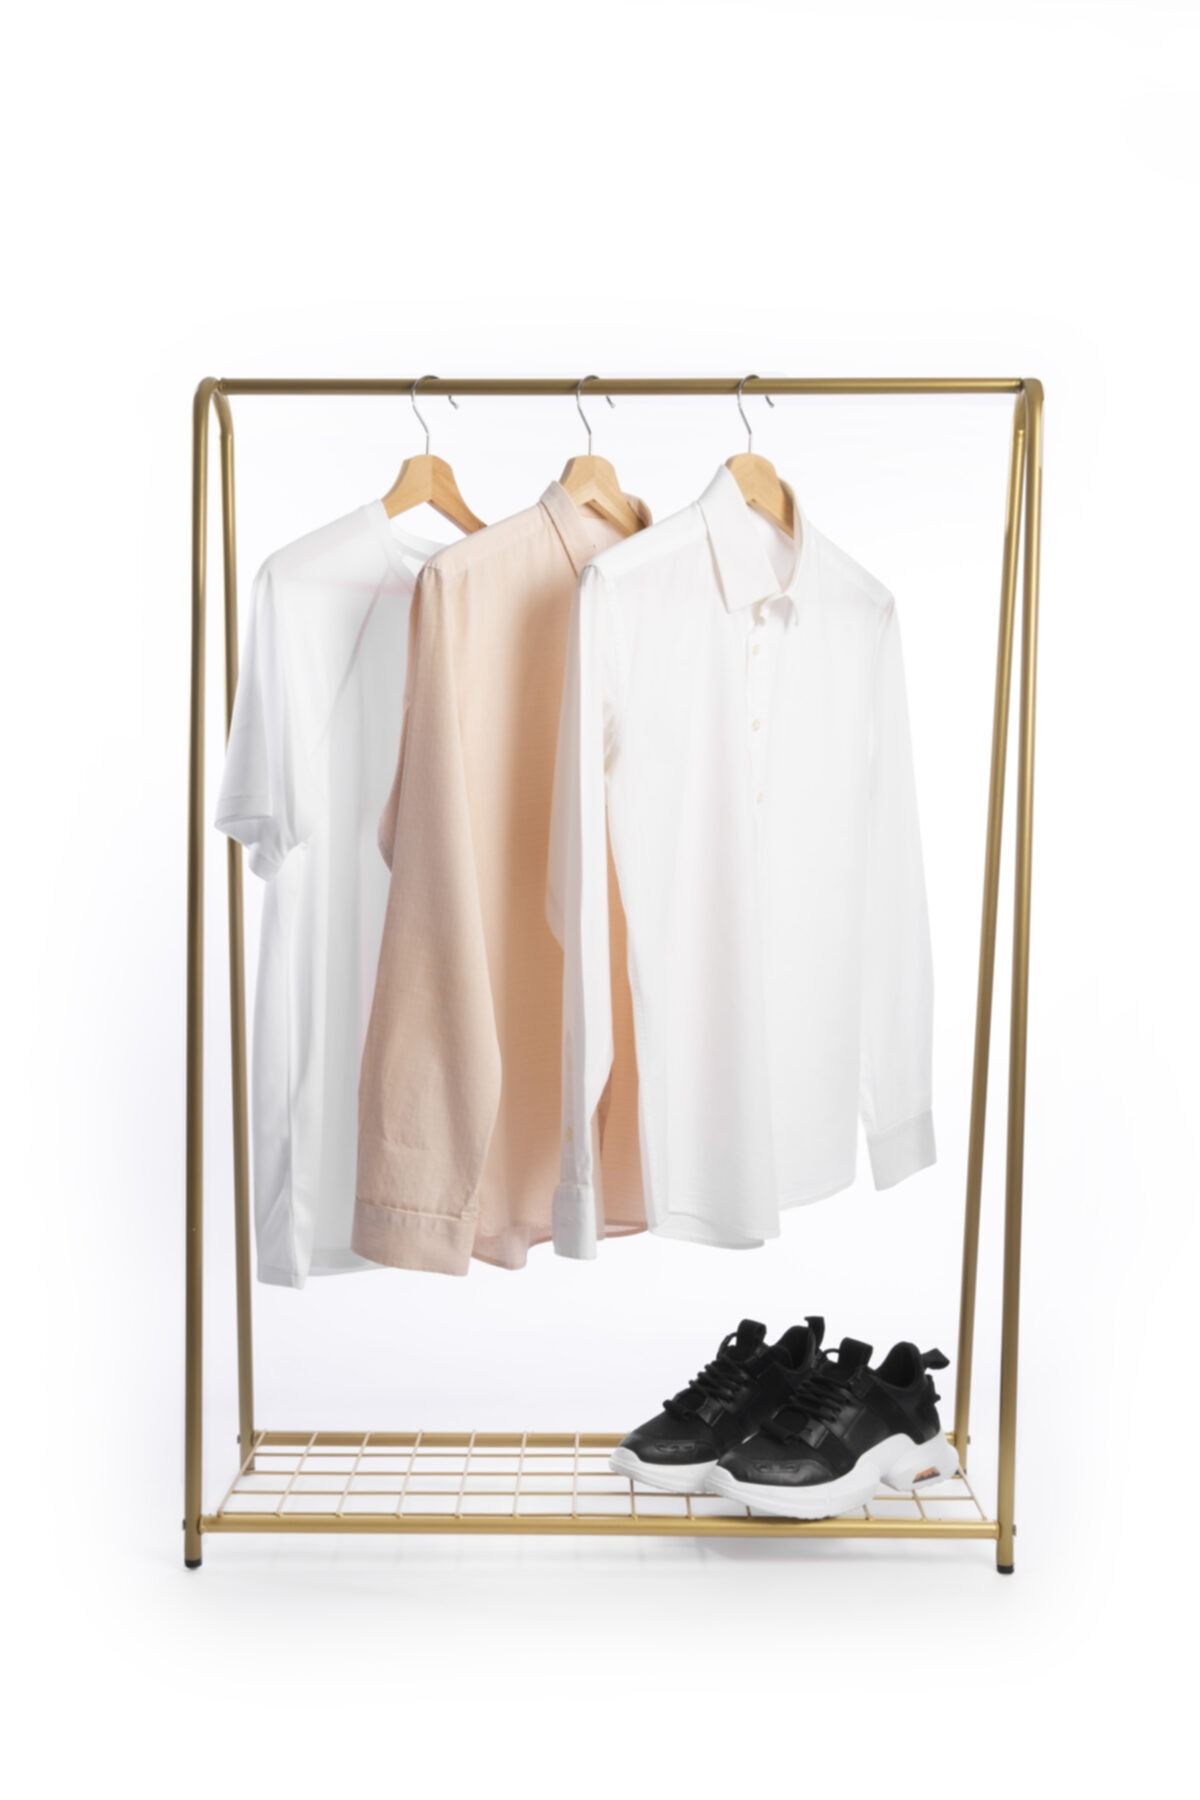 Fec Reklam Raflı Metal Ayaklı Konfeksiyon Askılığı Gold Ayaklı Askılık Raflı Elbise Askılığı Kıyafet Askılığı